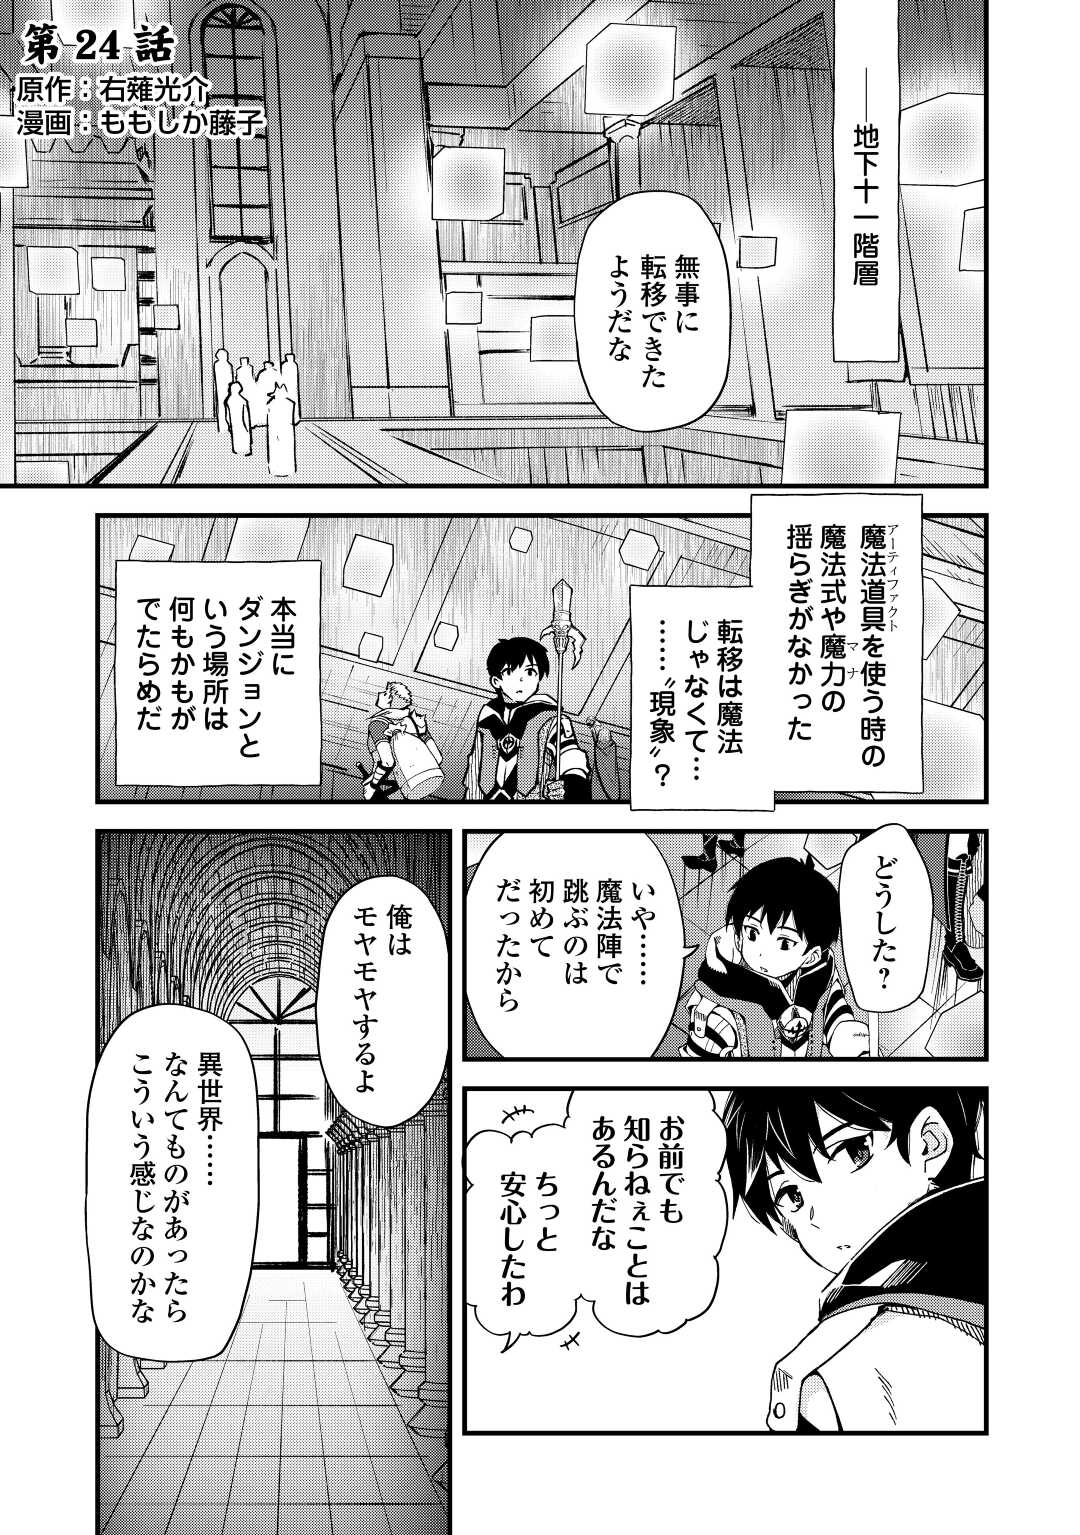 Ochikobore 1 Mahou Tsukai wa, Kyou mo Muishiki ni Cheat o Tsukau - Chapter 24 - Page 1